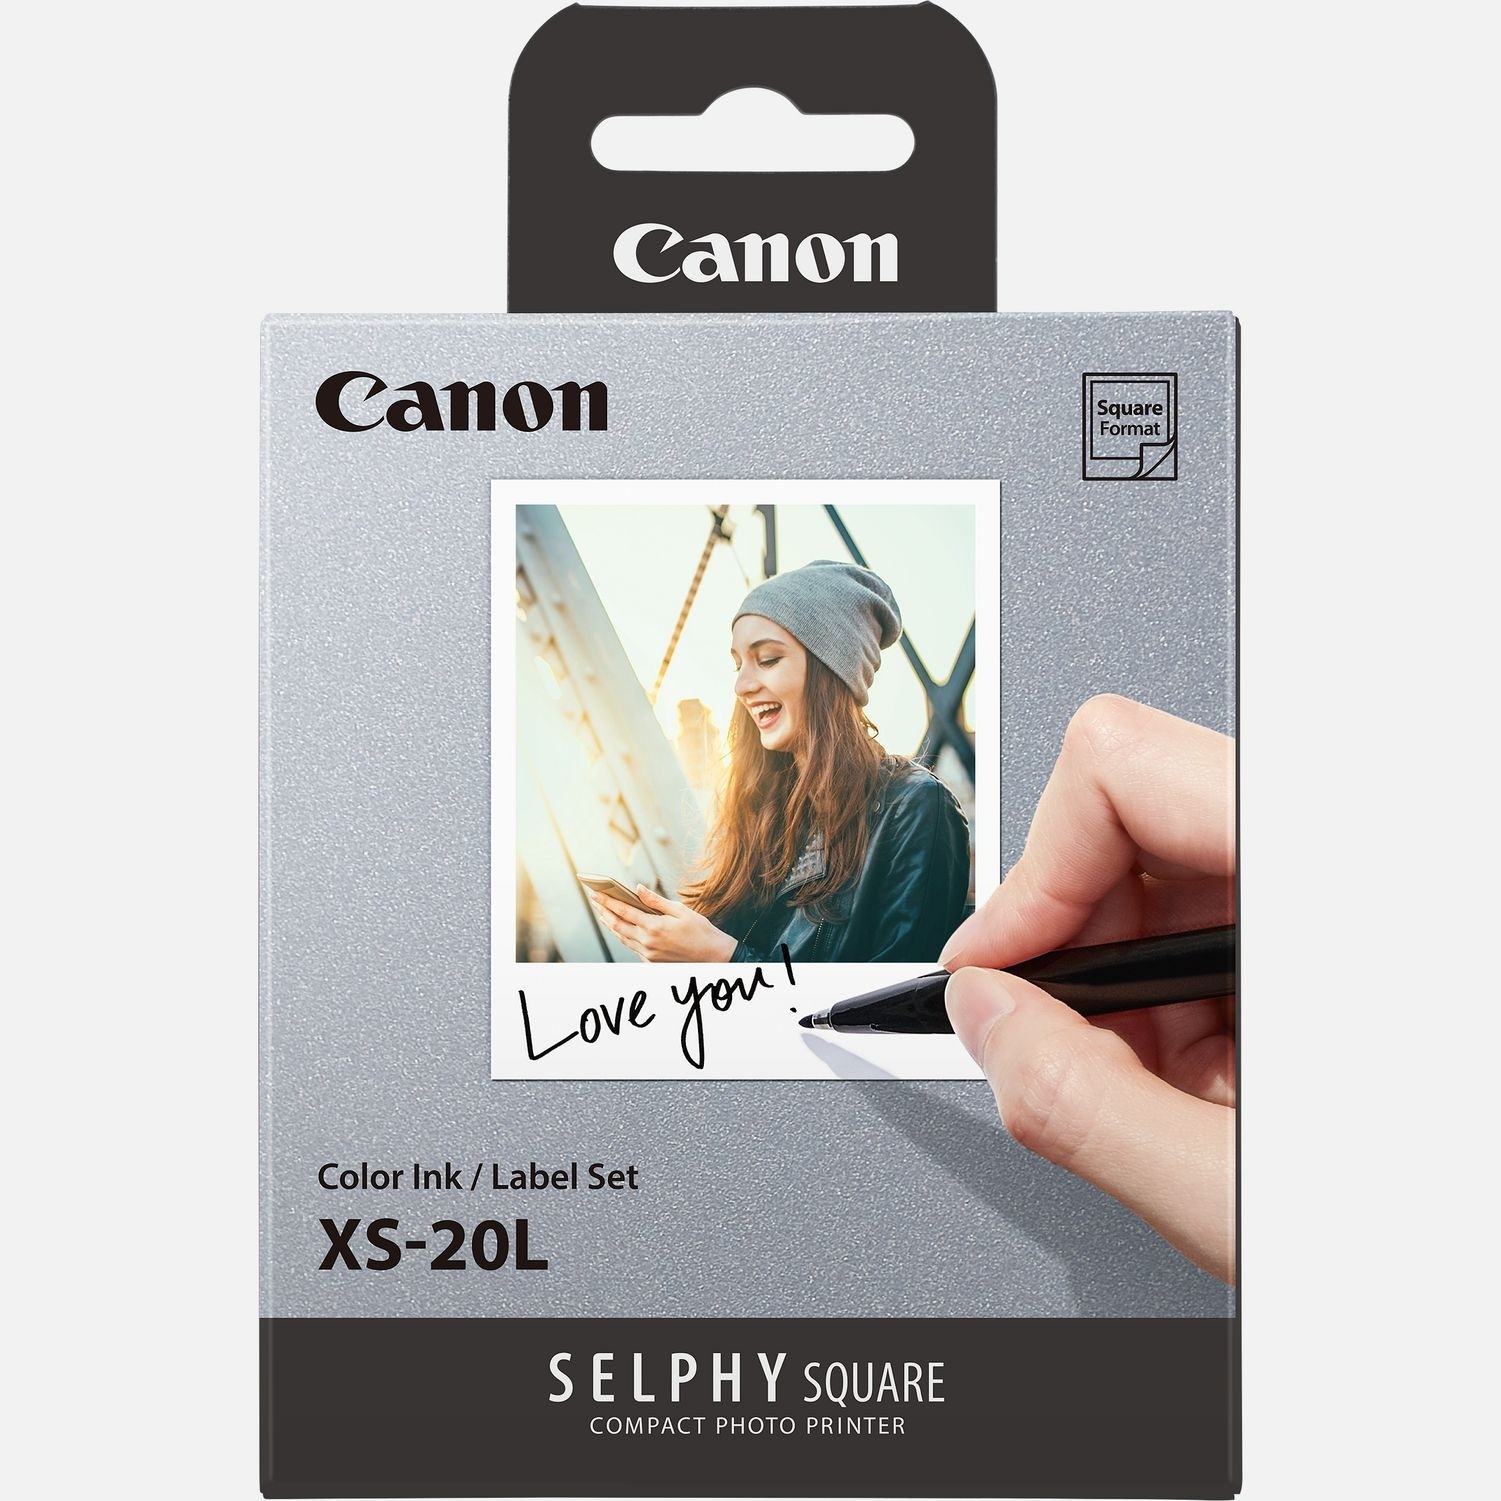 Canon XS-20L